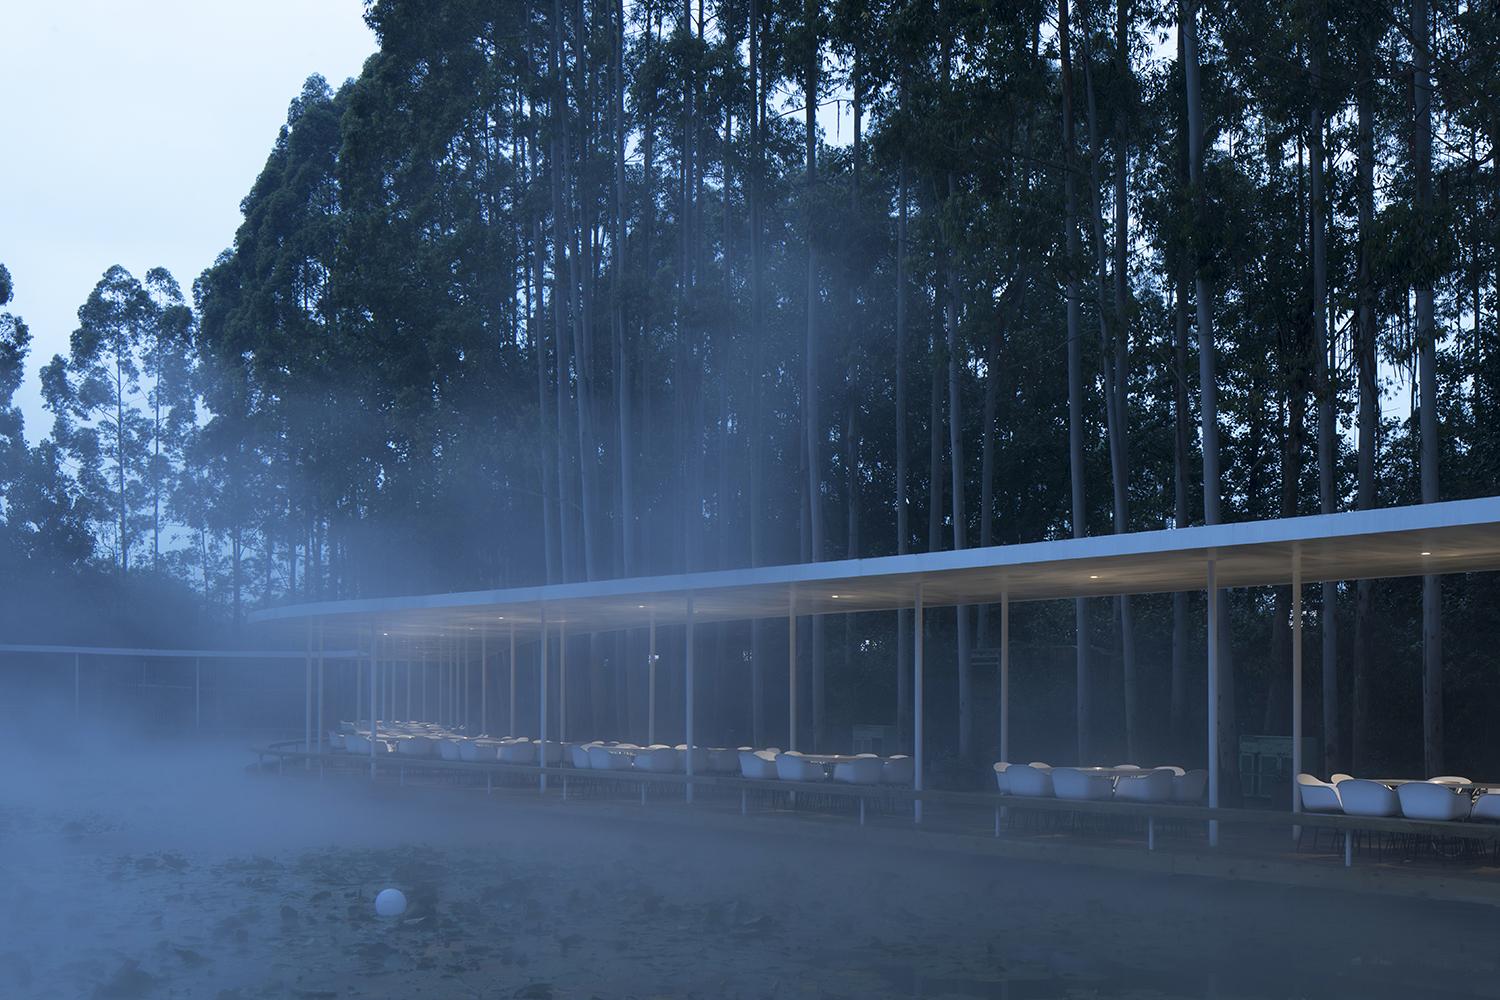 【成都火鍋 x 生態】宛如山水畫的餐廳設計 感受雲霧氤氳 絲帶飄逸的環境